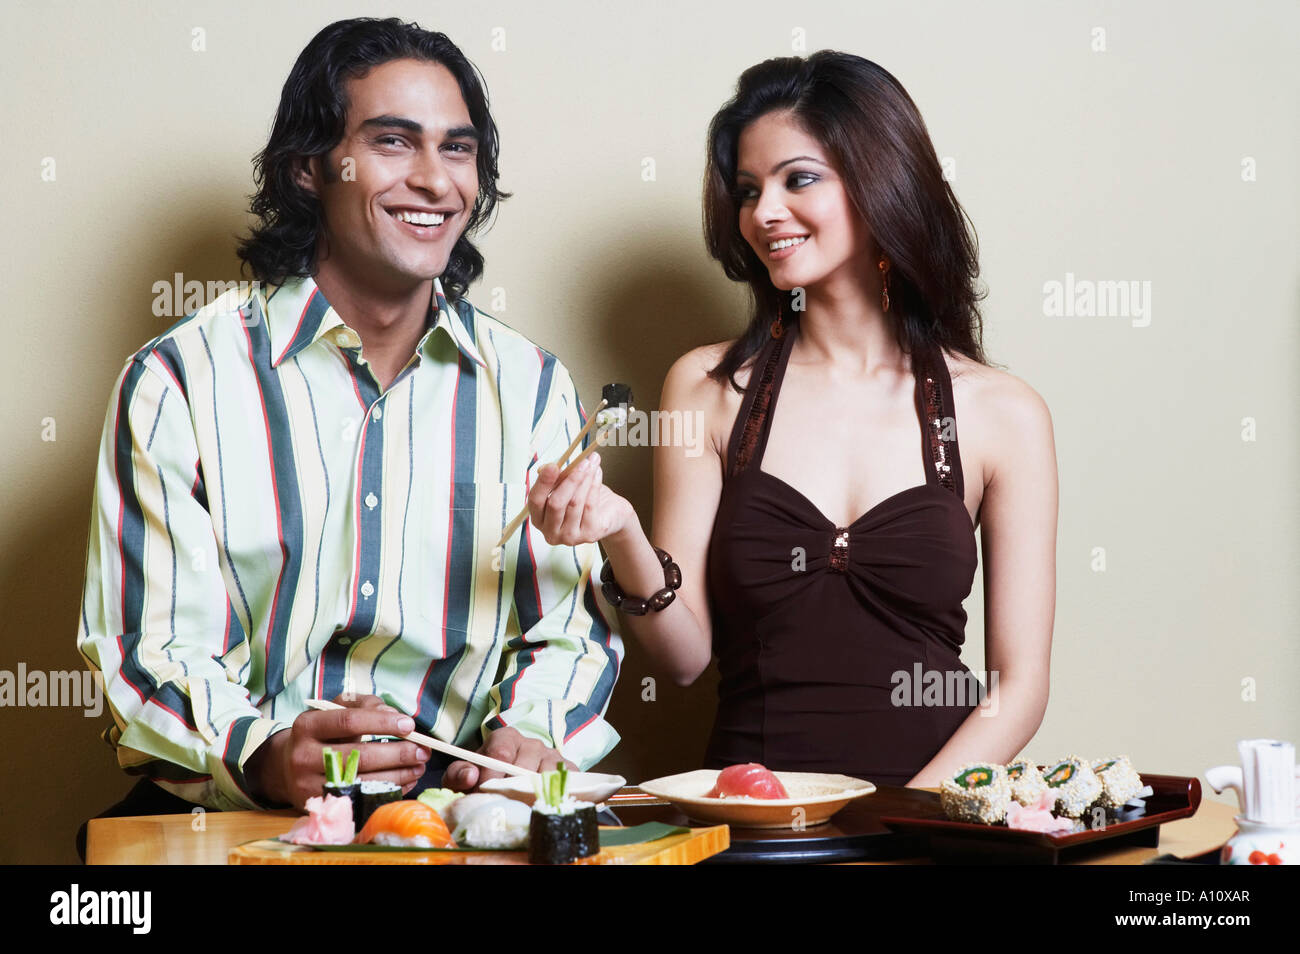 Retrato de un hombre joven con una mujer joven sentada en una mesa de comedor y sonriente Foto de stock